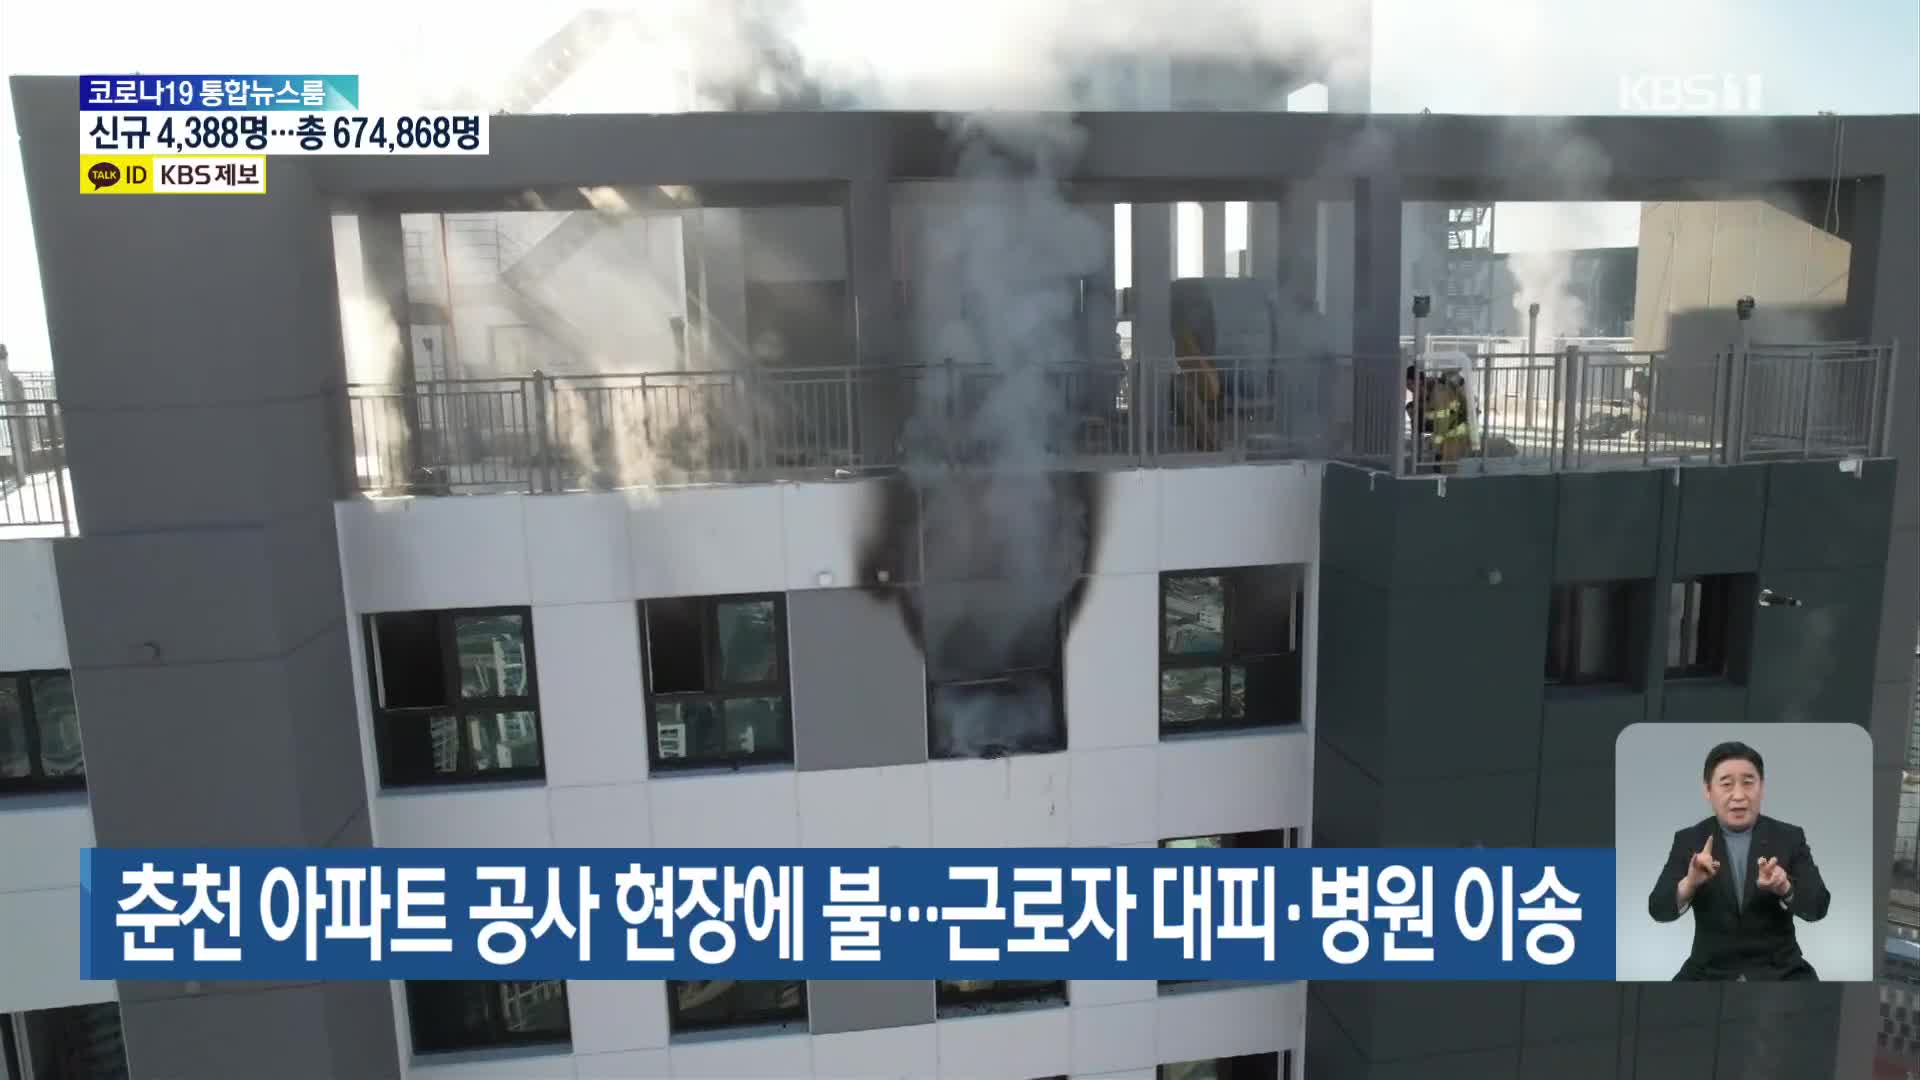 춘천 아파트 공사 현장에 불…근로자 대피·병원 이송